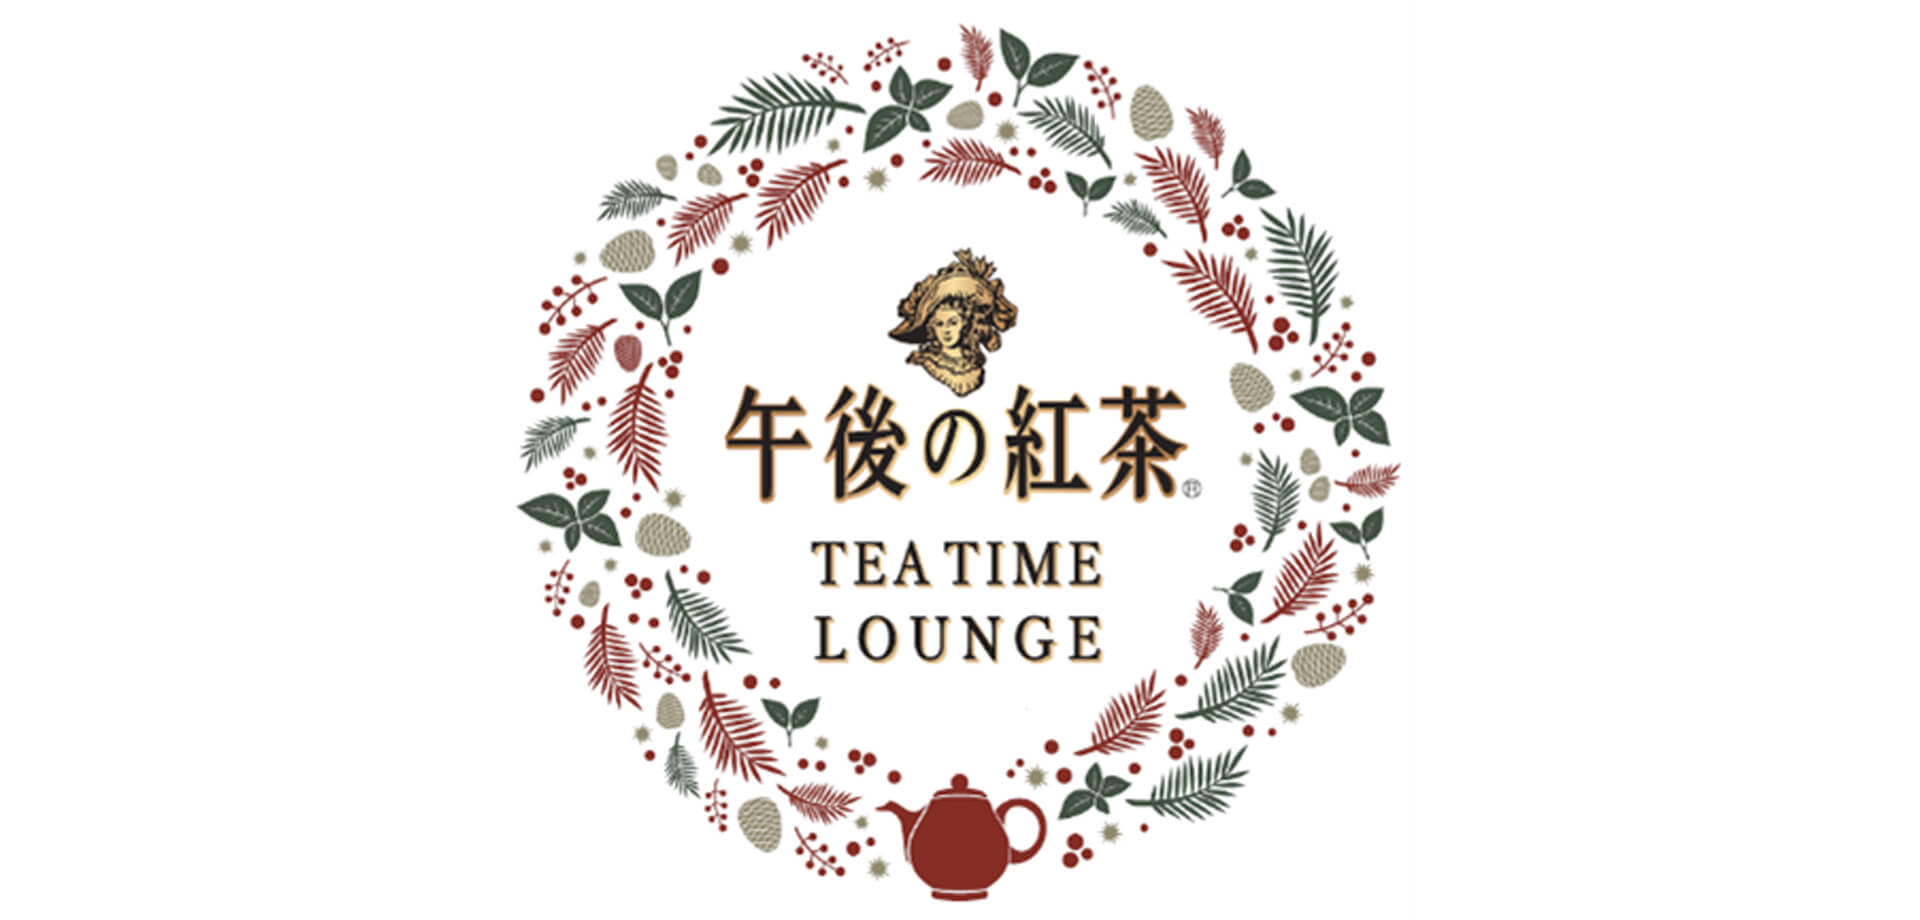 午後の紅茶 TEA TIME LOUNGE 渋谷スクランブルスクエア